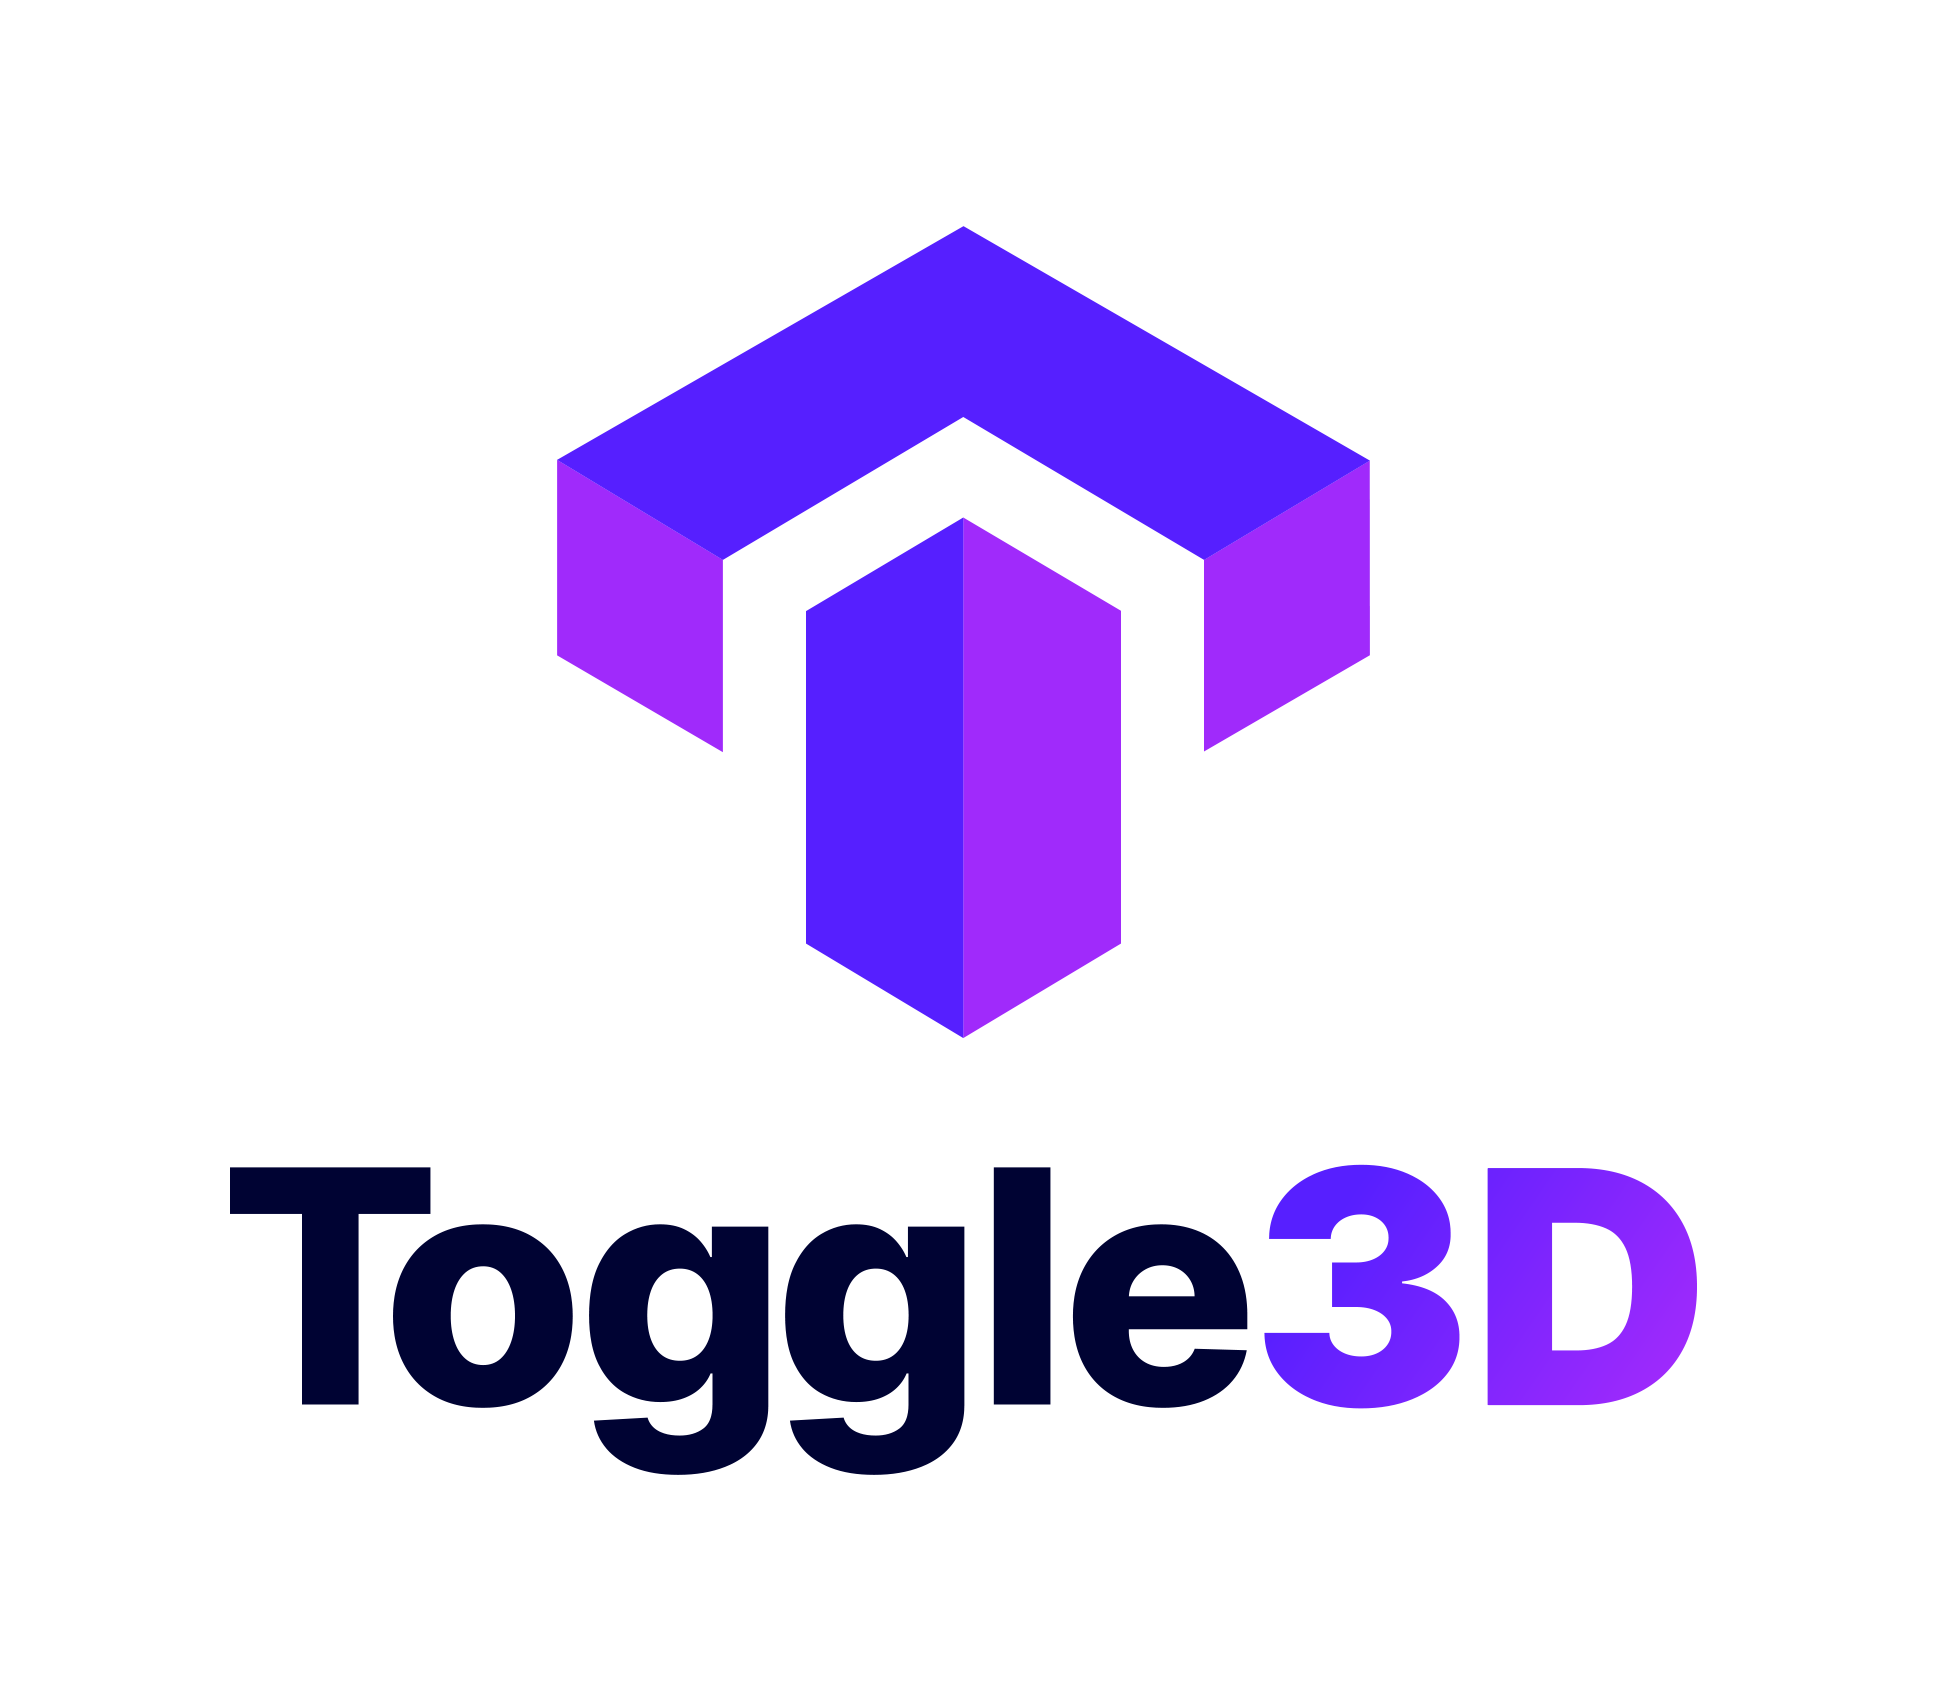 Toggle3D.ai